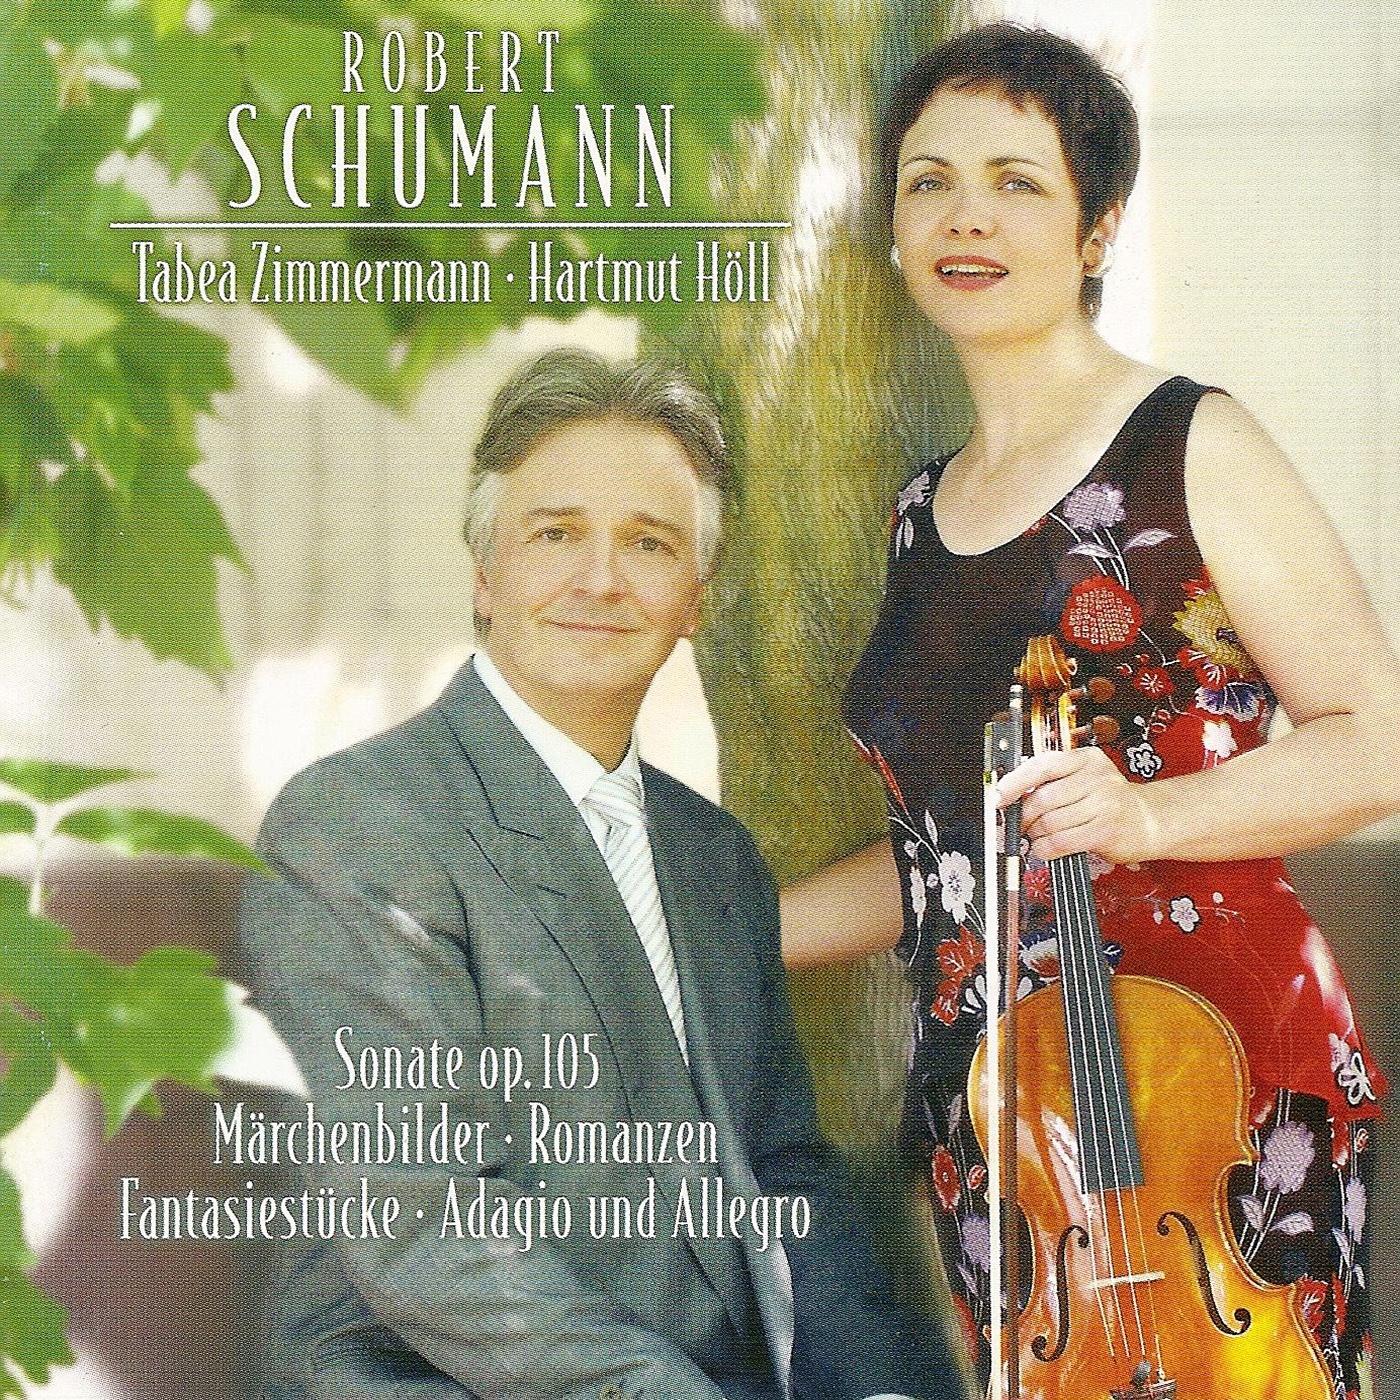 SCHUMANN, R.: Adagio and Allegro  Fantasiestü cke  3 Romanzen  Violin Sonata No. 1  Marchenbilder Zimmermann, Holl